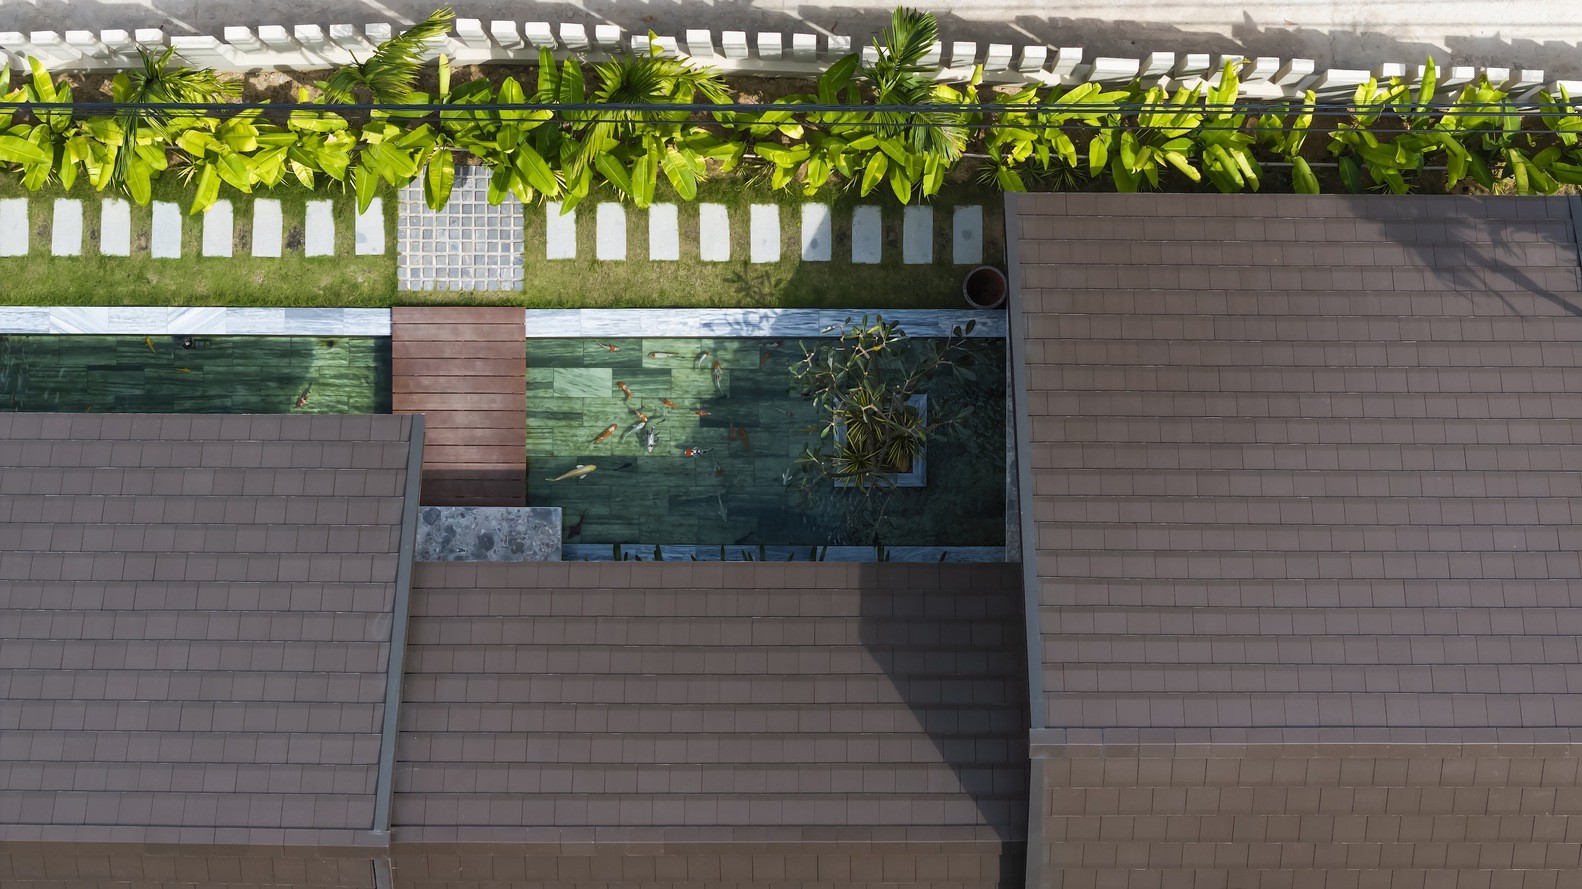 Ấn tượng ngôi nhà vườn ngập tràn màu xanh ở ngoại ô Hà Nội ảnh 11